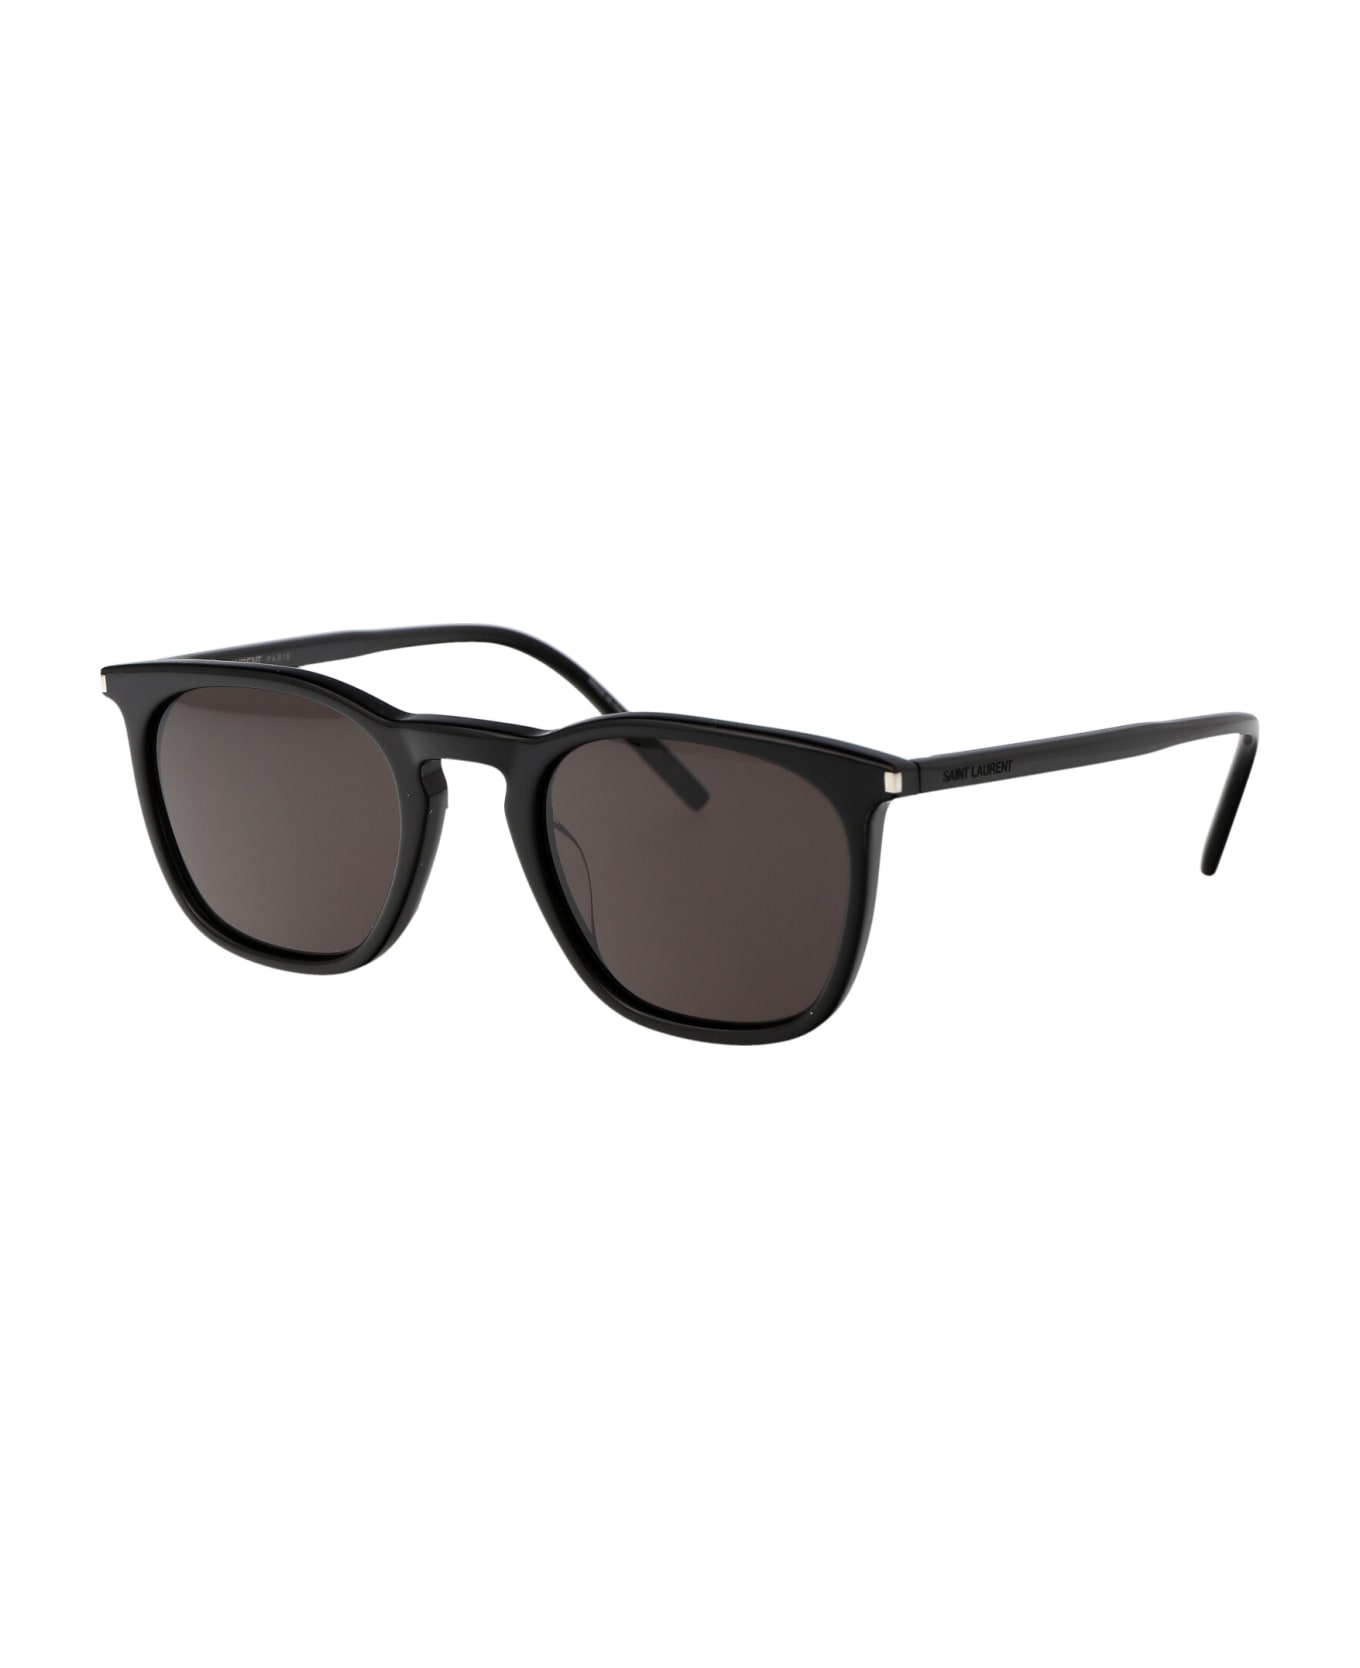 Saint Laurent Eyewear Sl 623 Sunglasses - 001 BLACK BLACK BLACK